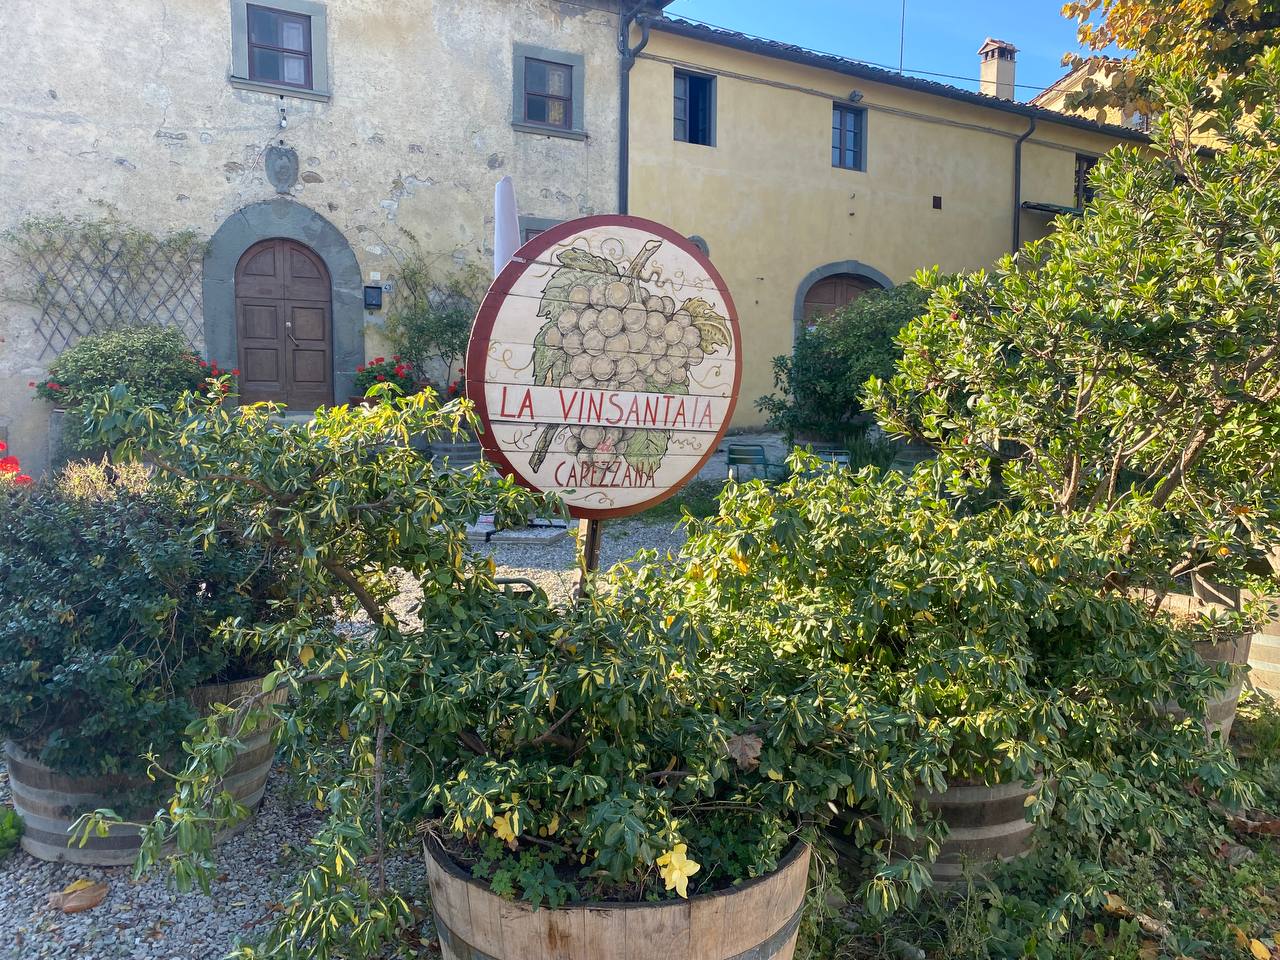 vin santo vinsantaia di Capezzana